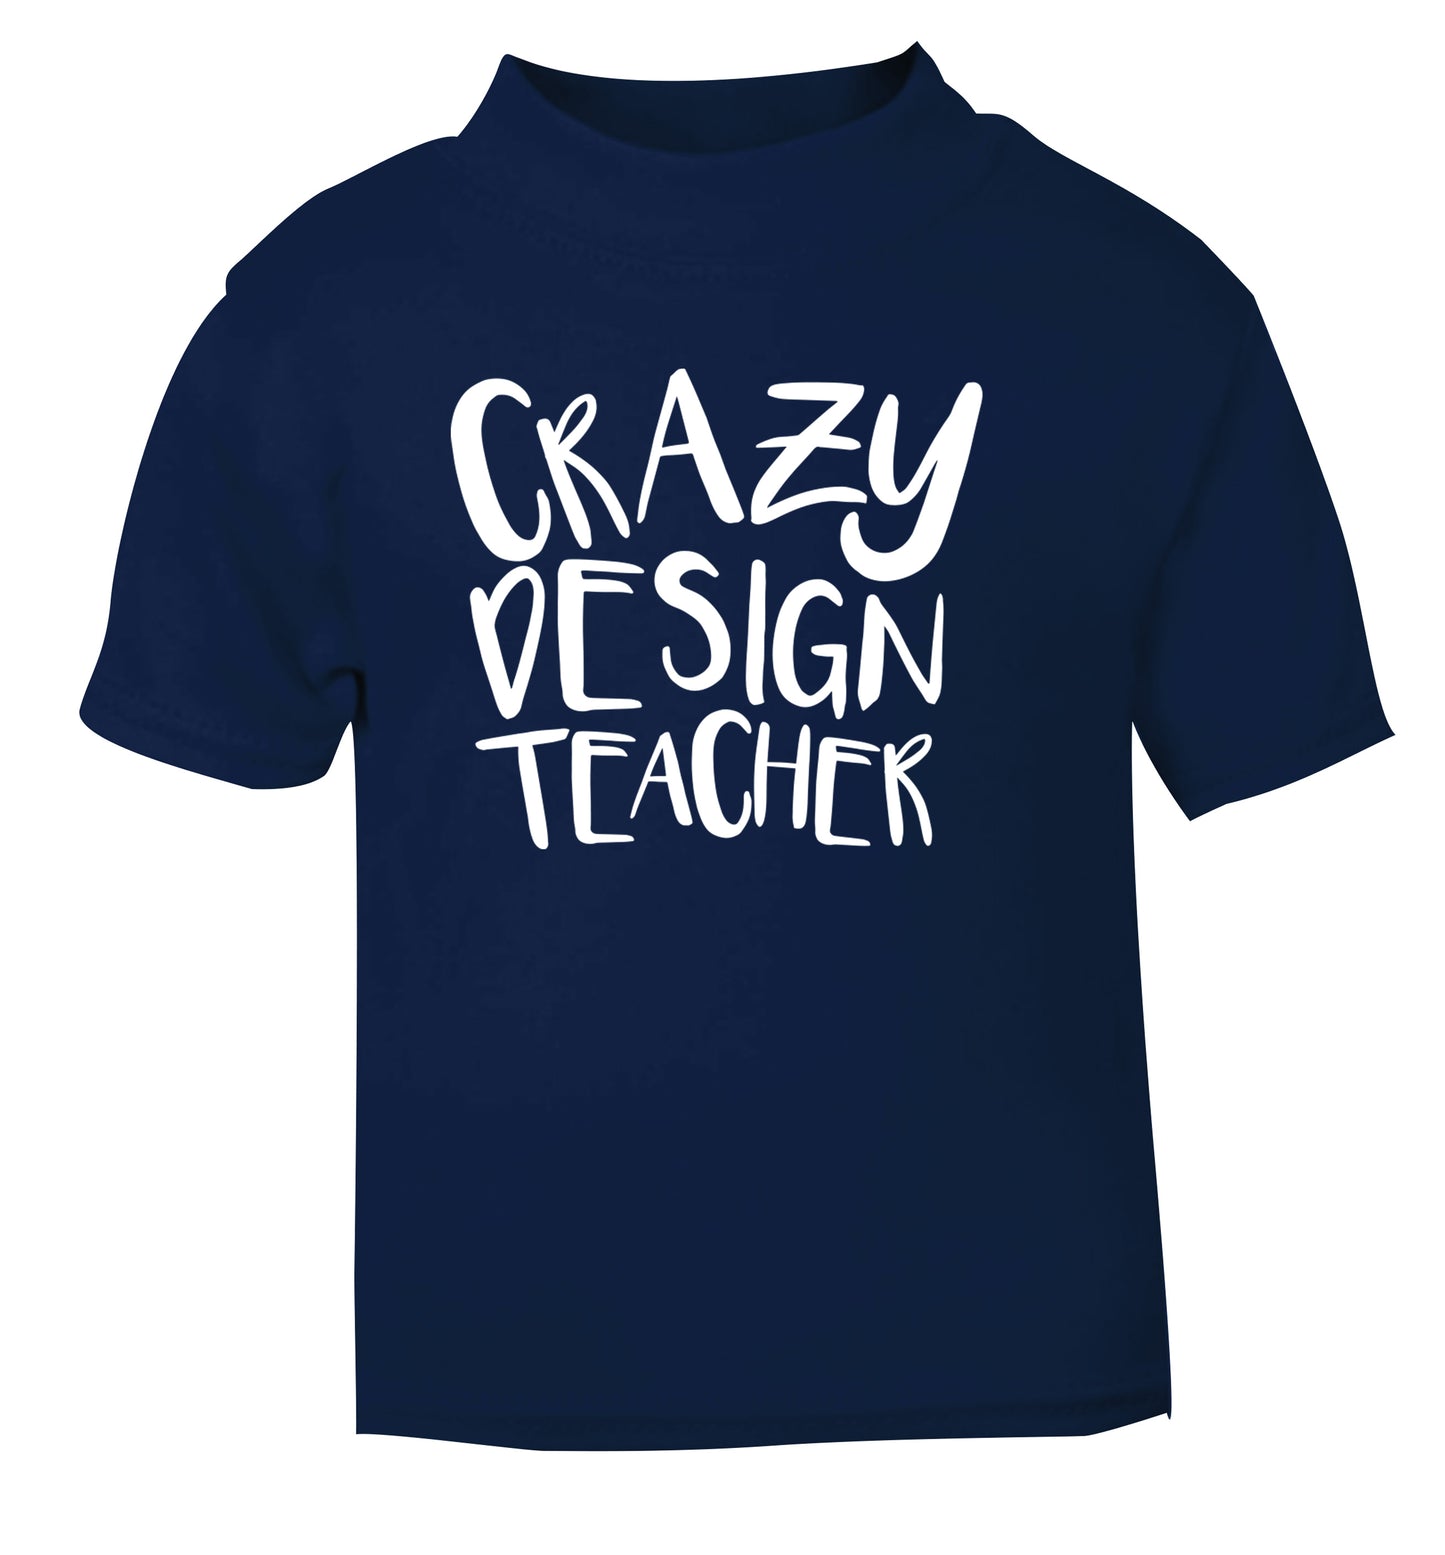 Crazy design teacher navy Baby Toddler Tshirt 2 Years